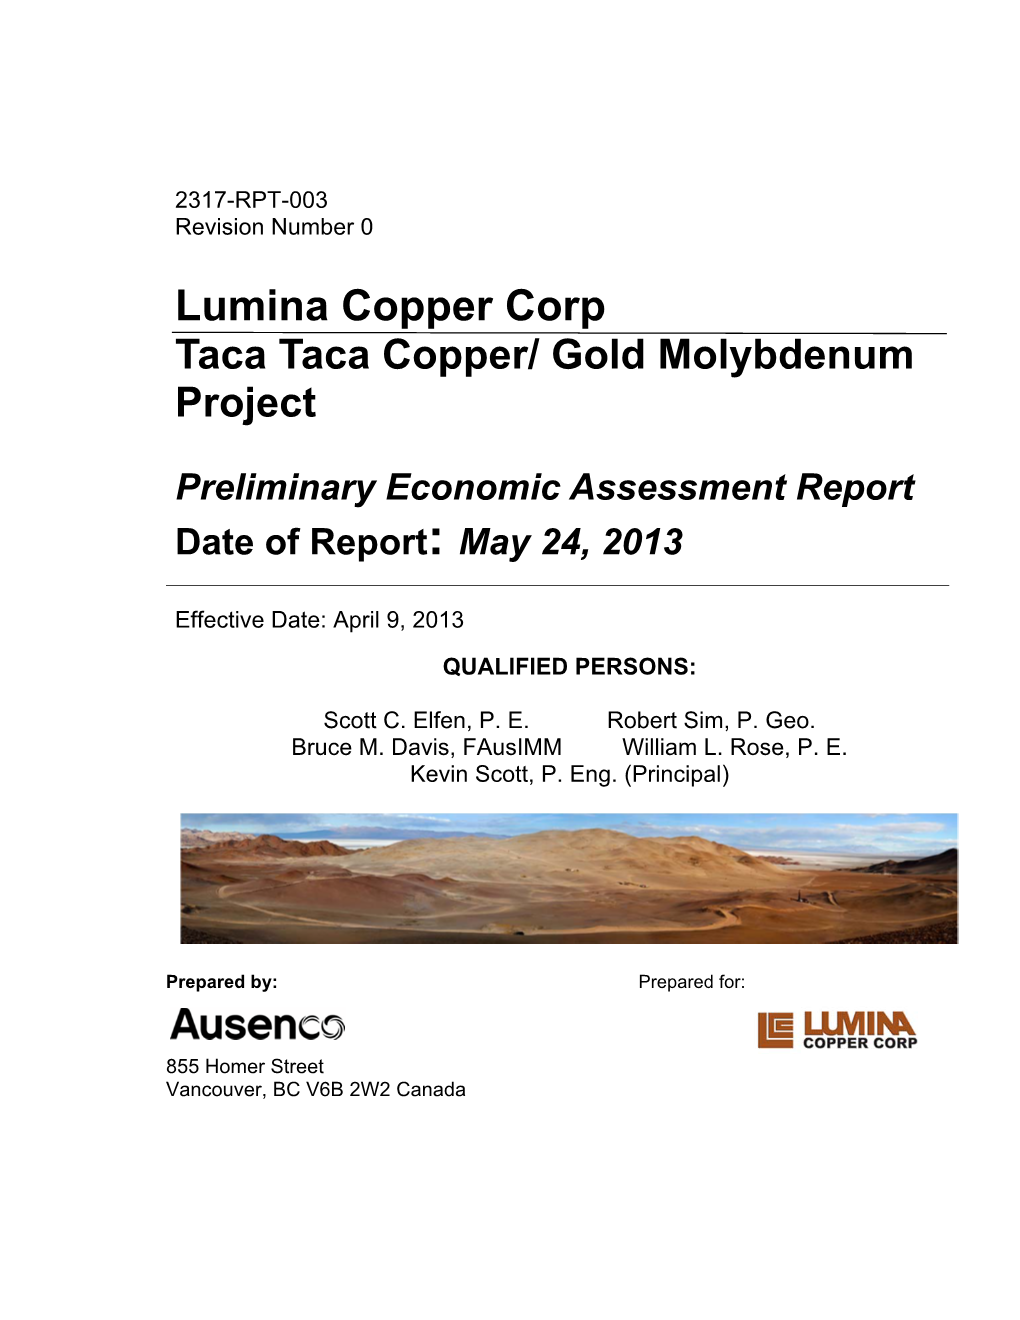 Lumina Copper Corp Taca Taca Copper/ Gold Molybdenum Project